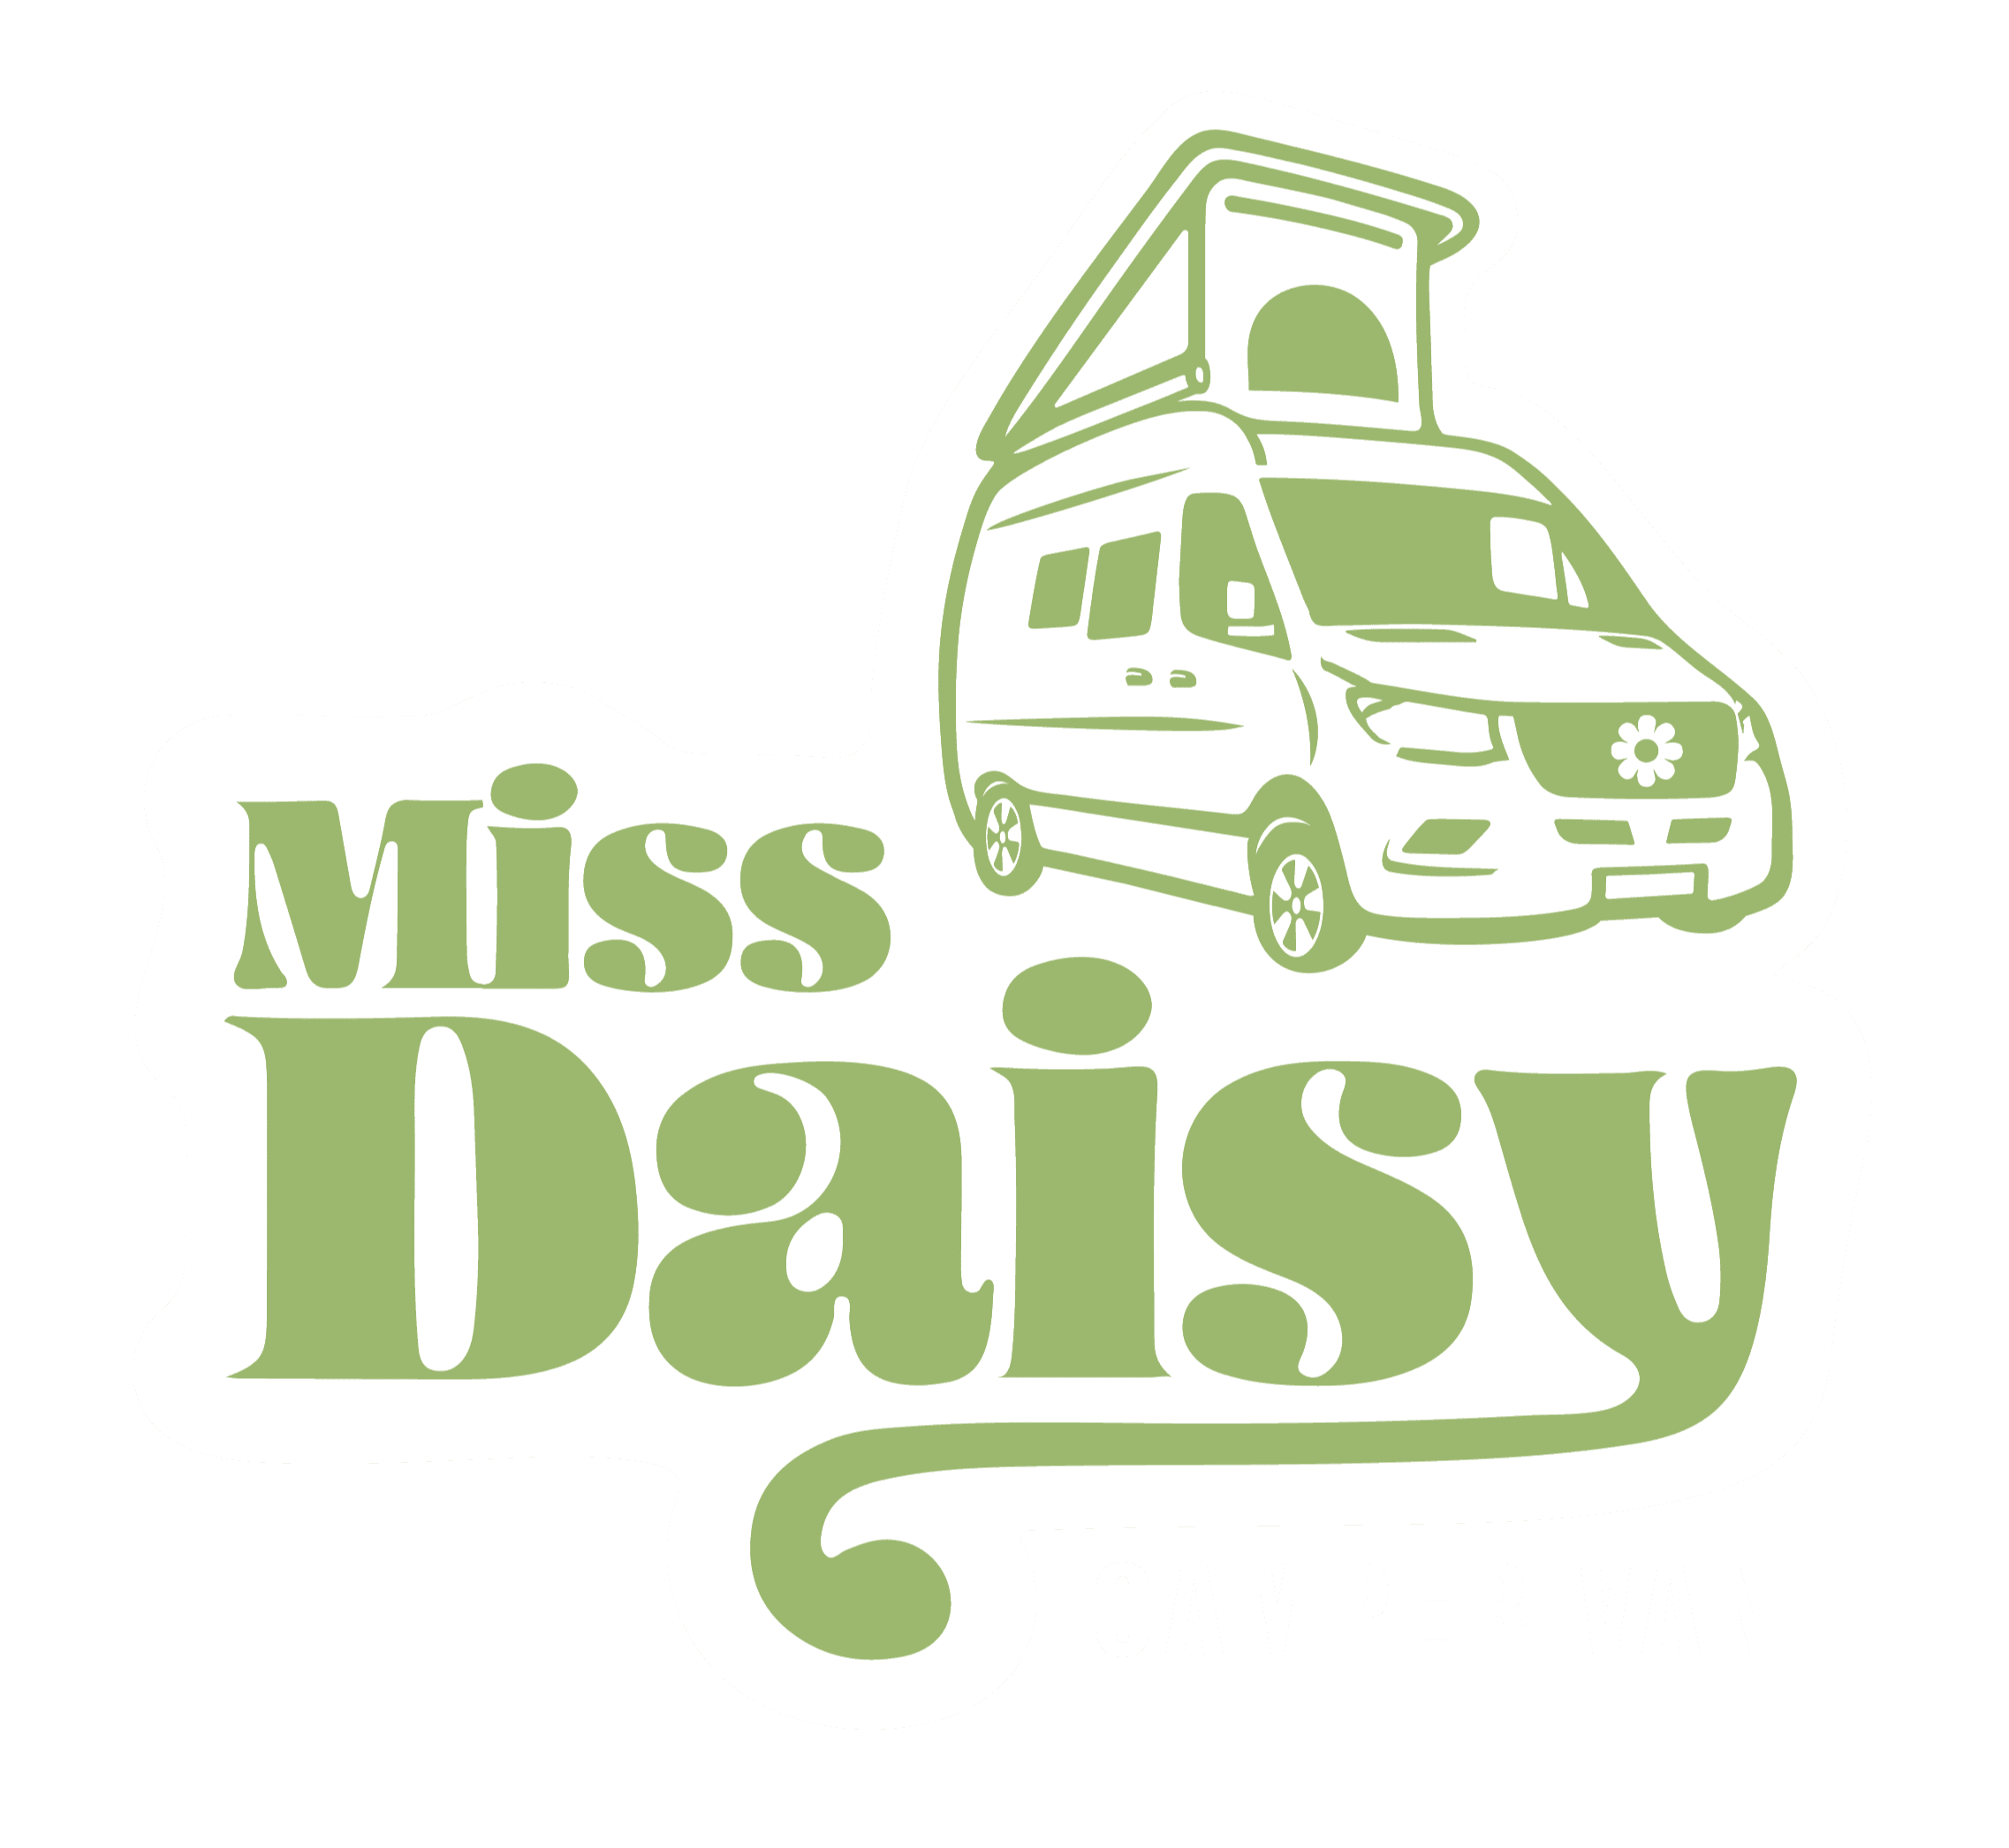 Miss Daisy Camper Van